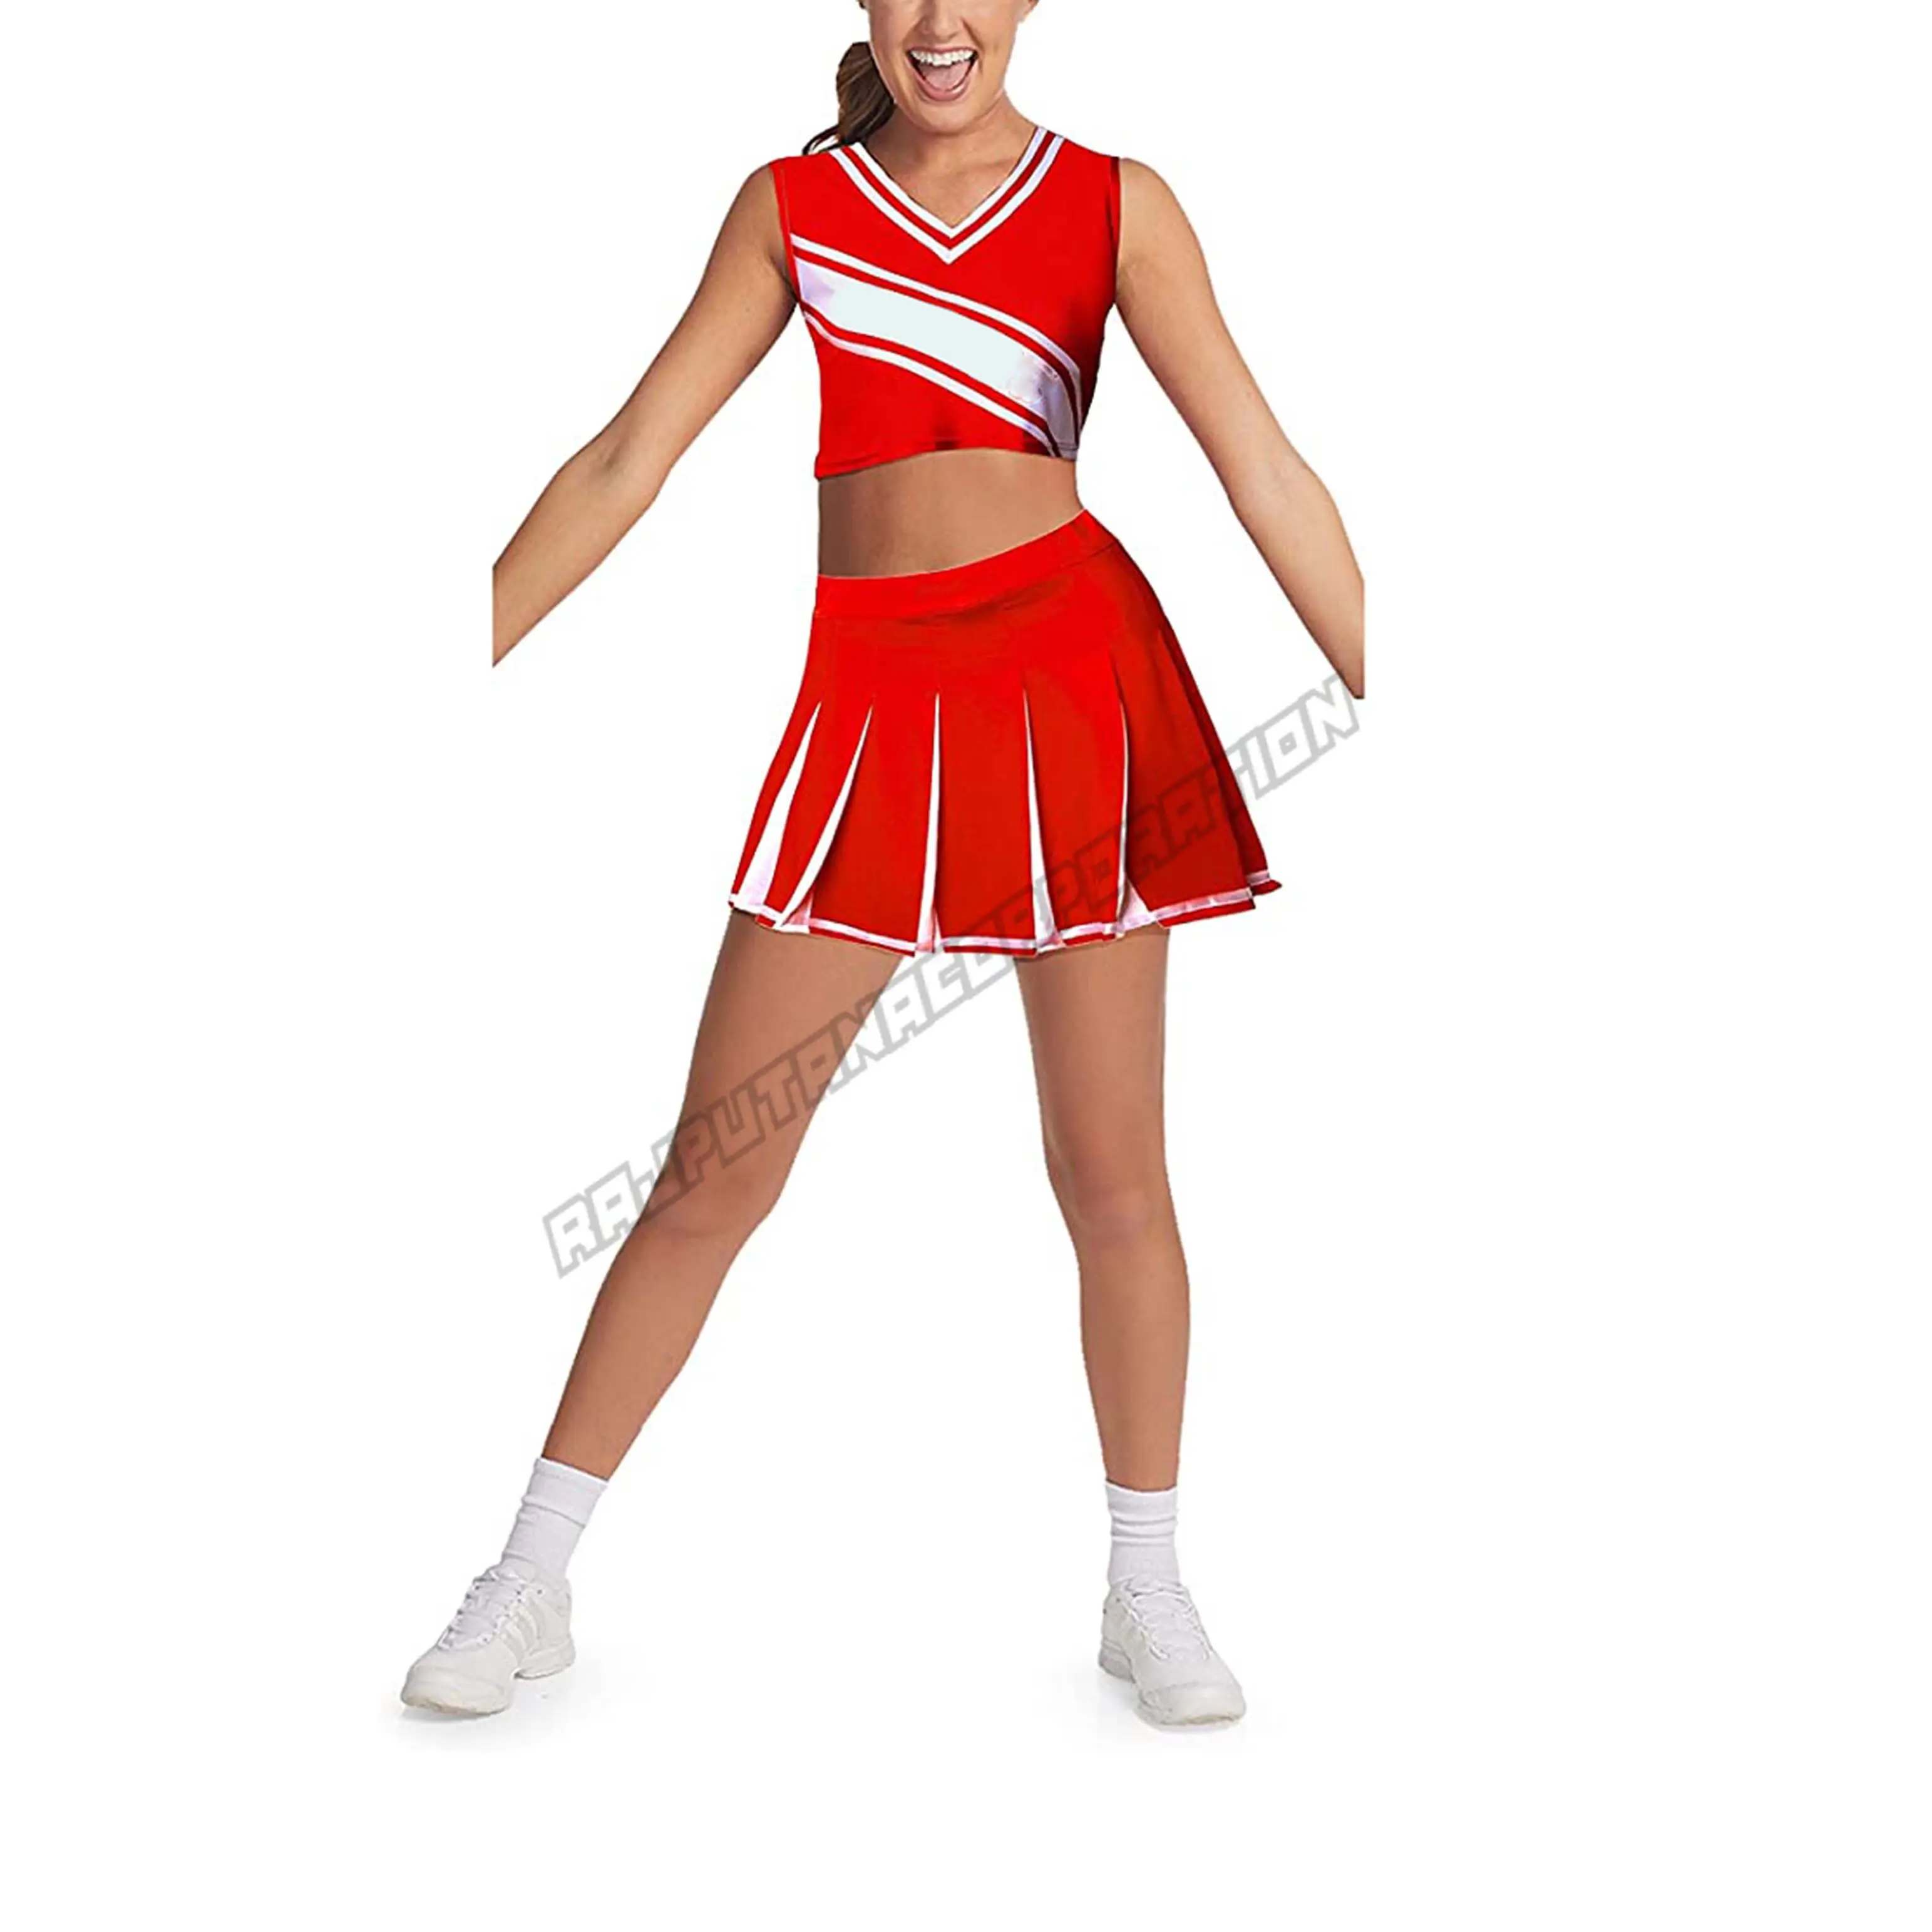 Gaun mewah kustom Cheerleader seksi wanita seragam olahraga berkualitas tinggi Cheer seragam utama wanita